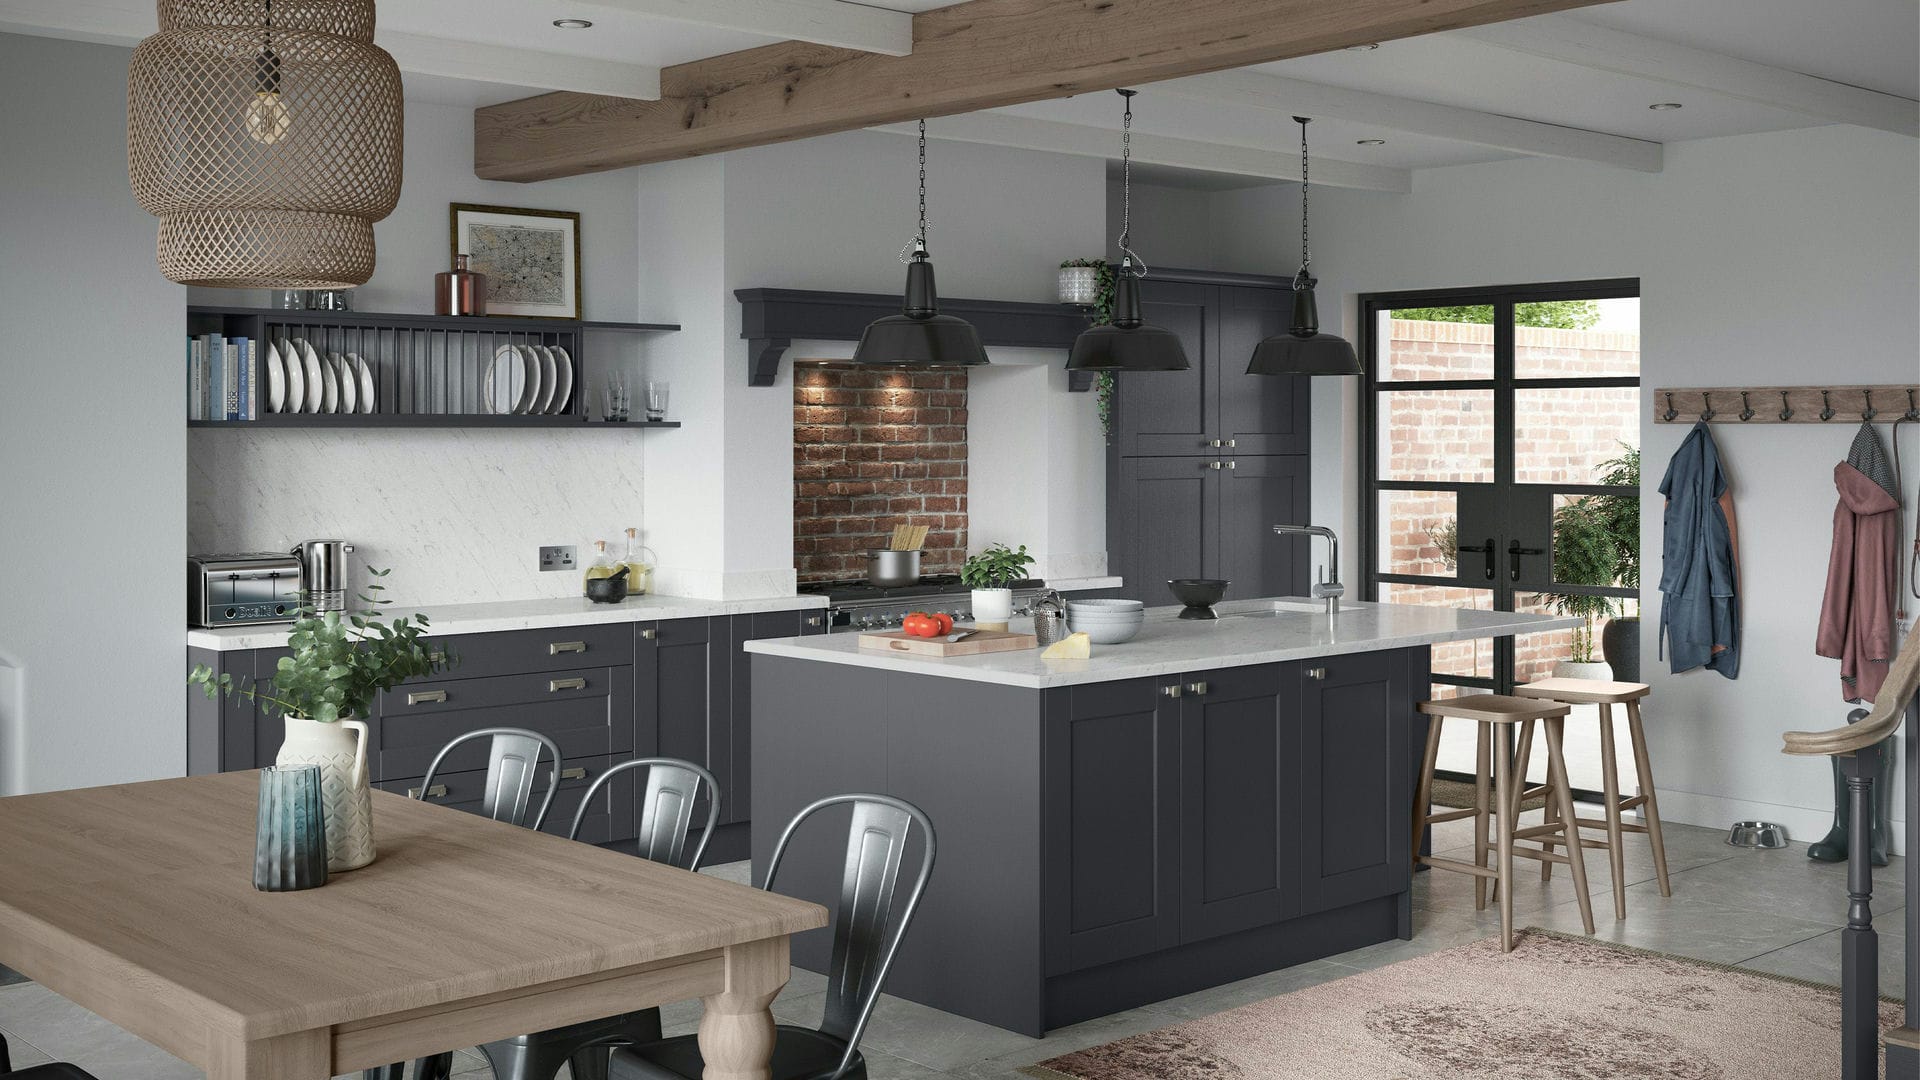 Modern Shaker Indigo kitchens updating classic shaker design with a modern twist in indigo blue